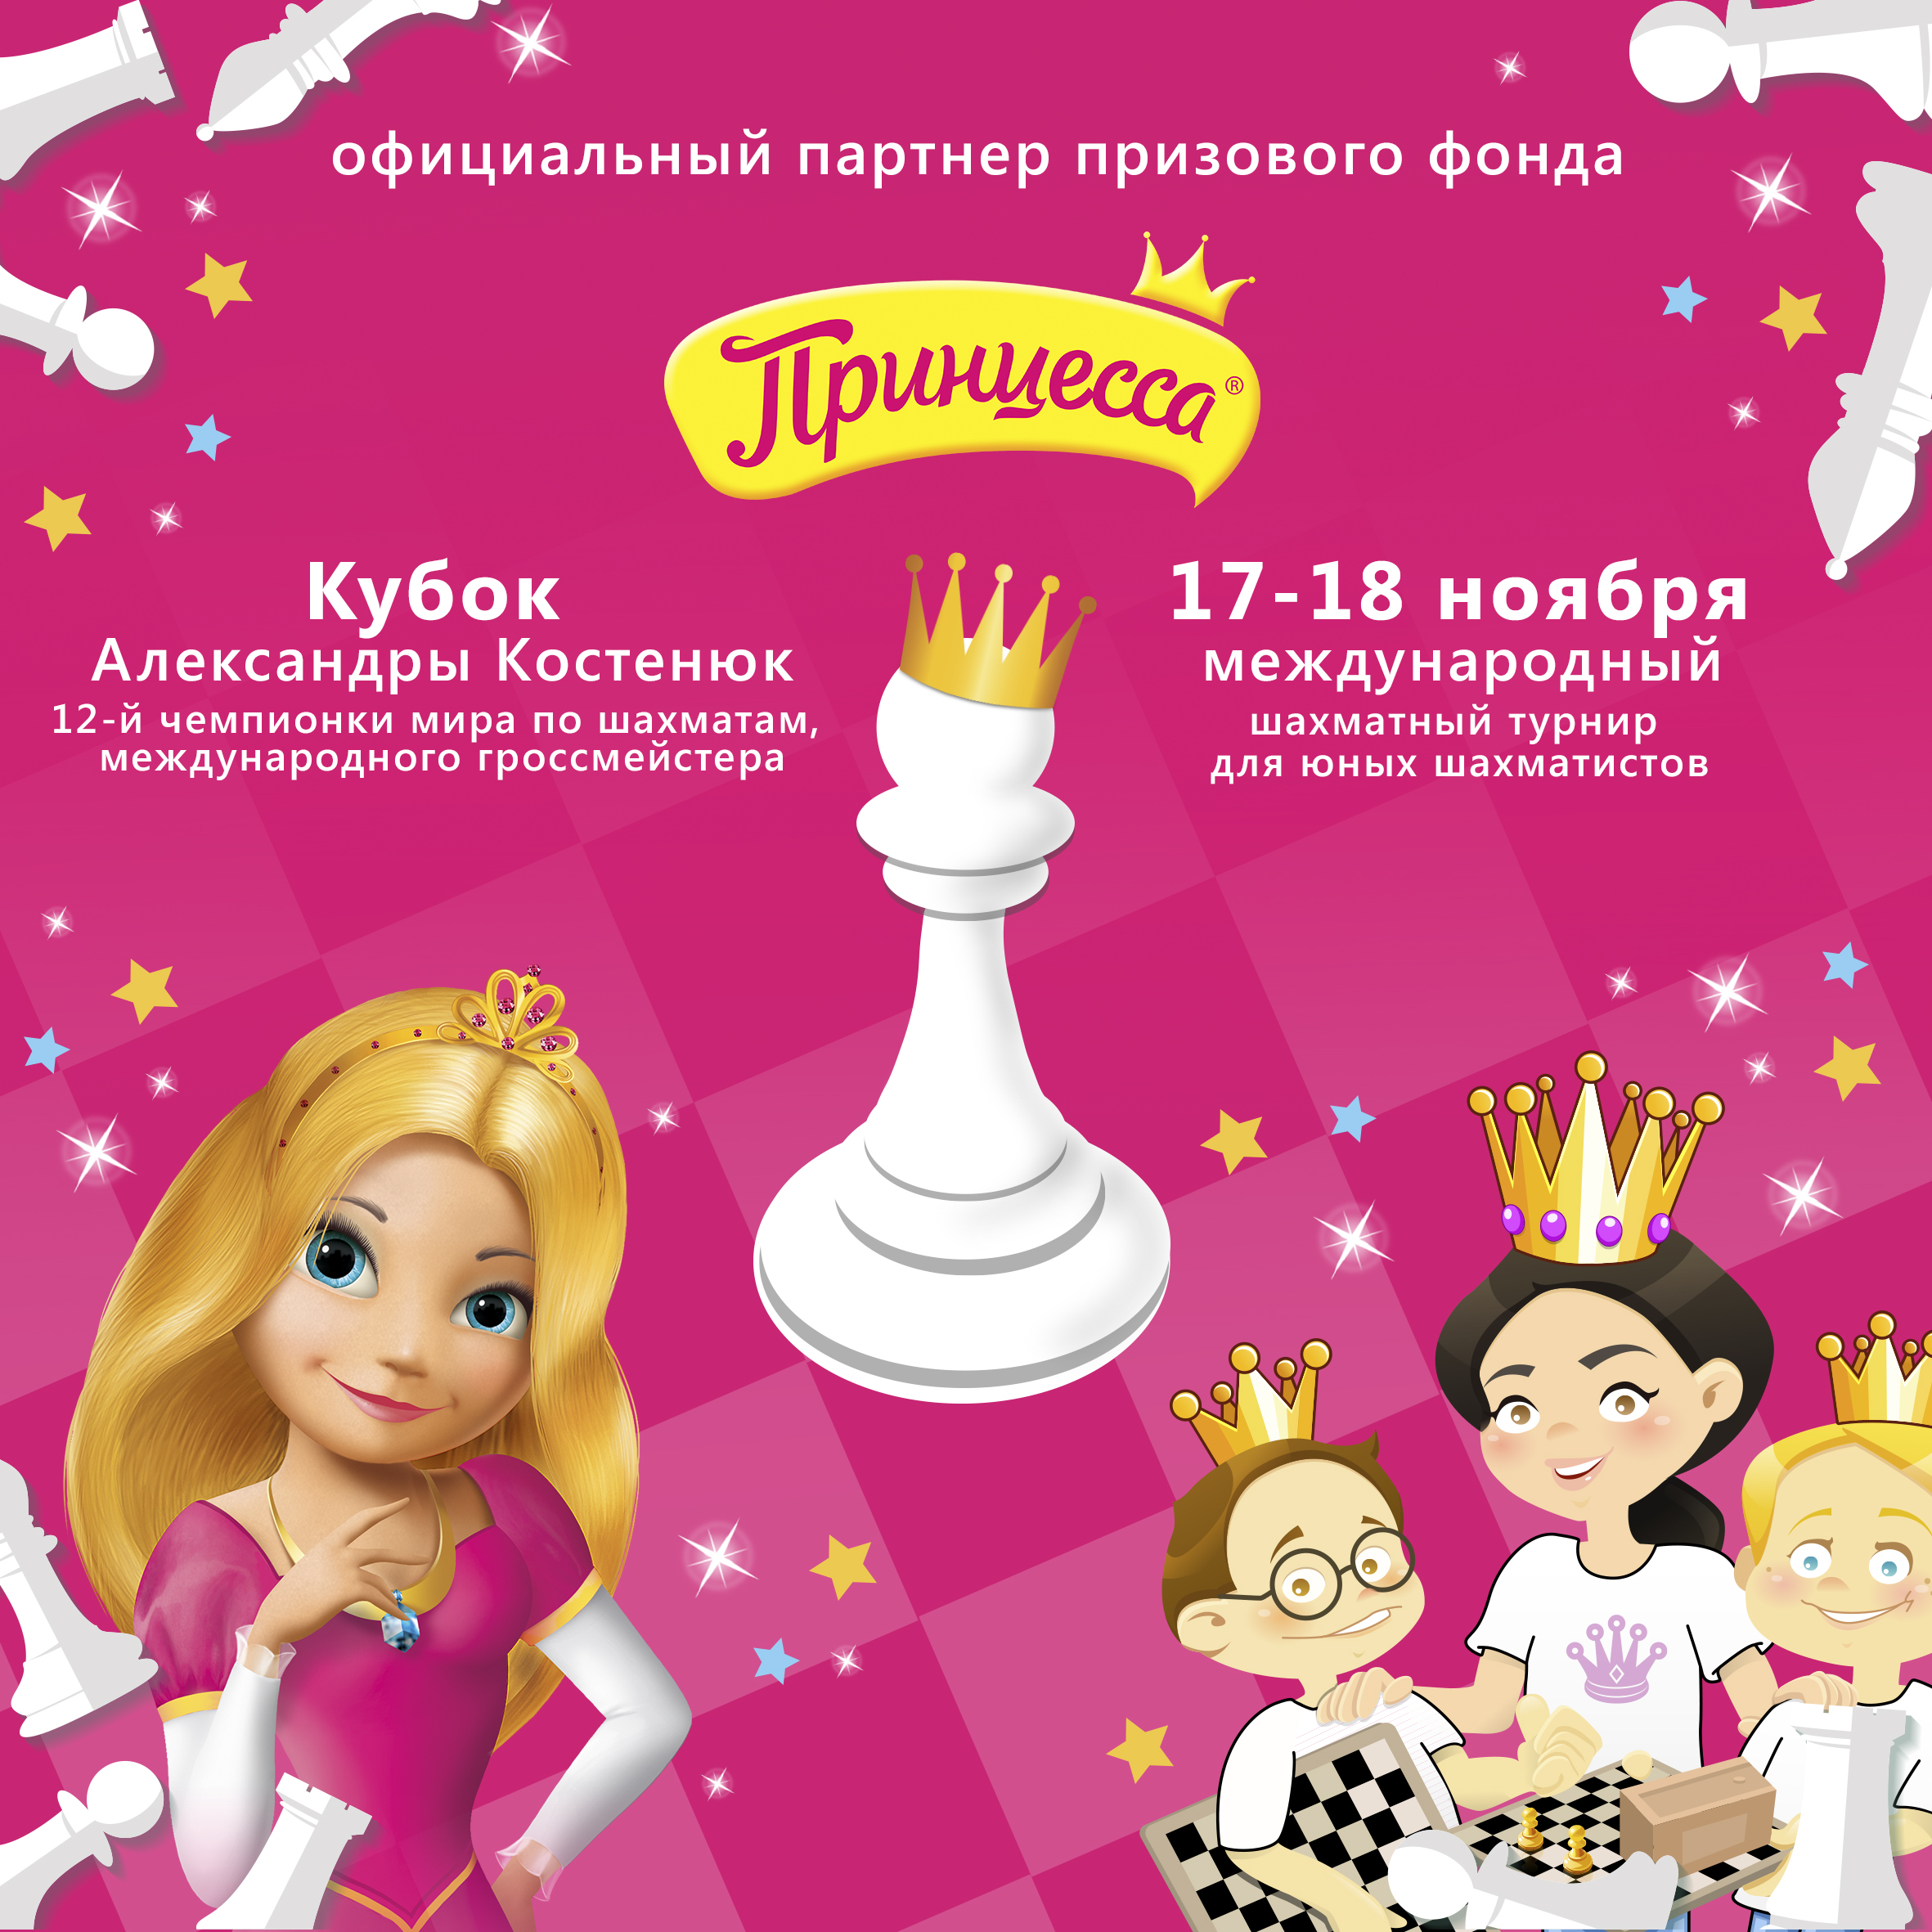 Принцесса - призовой спонсор 11го Кубка Александры Костенюк